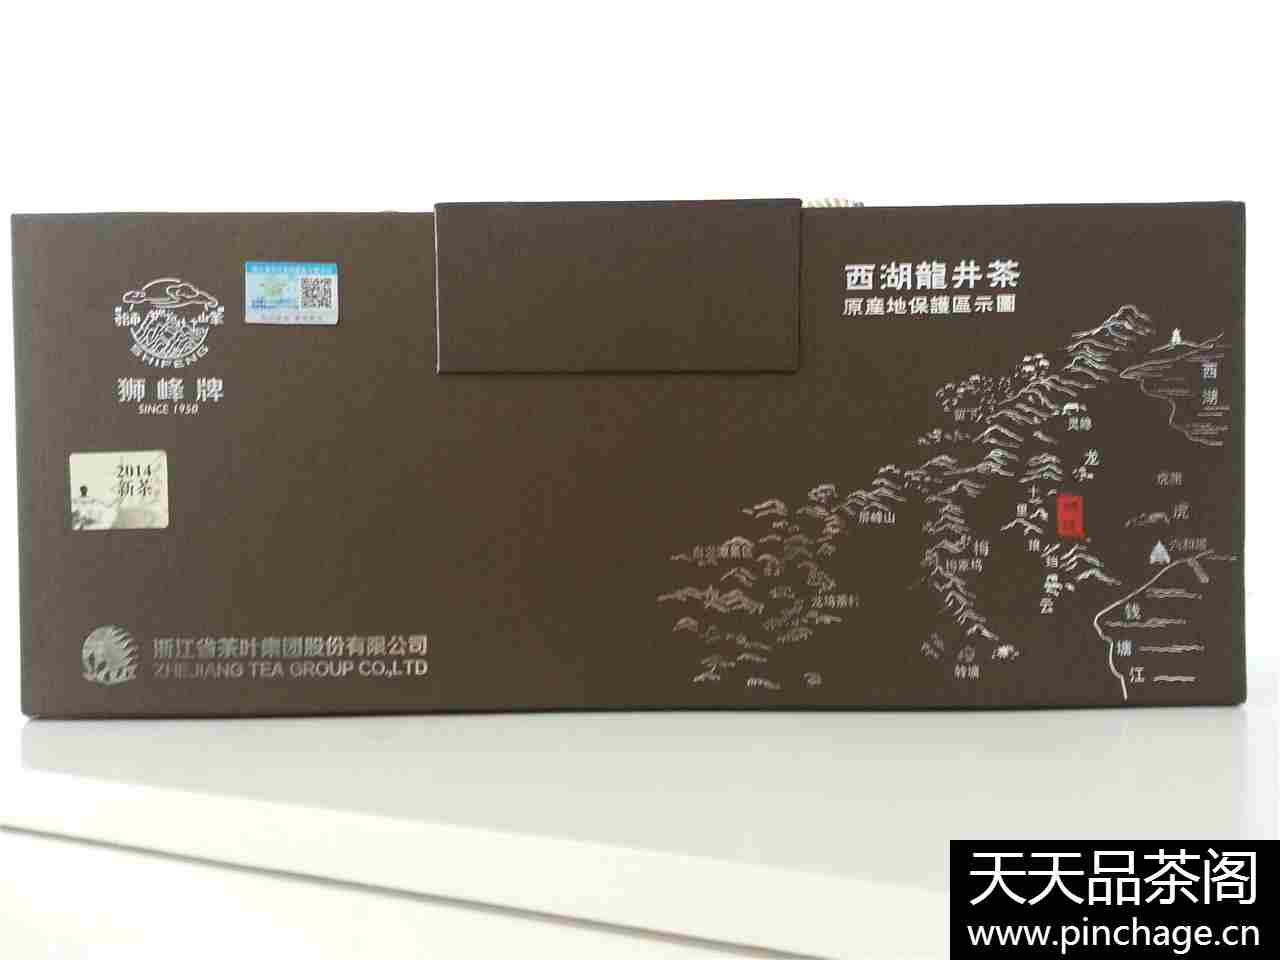 狮峰茶叶-世界优质食品金奖品牌